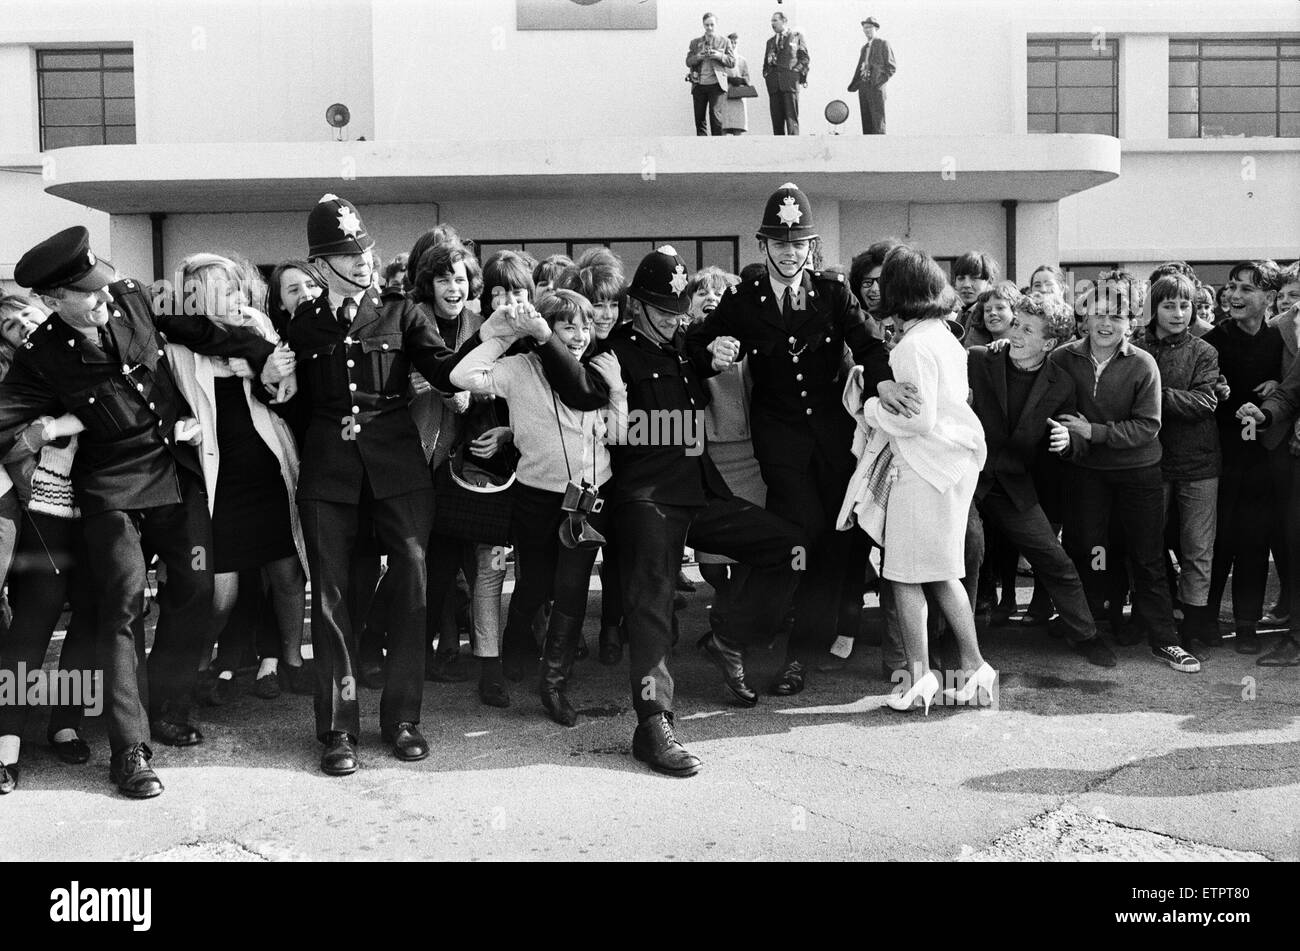 Riesige Menschenmengen begrüßen die Ankunft des Manchester Popgruppe The Hollies Flughafen Shoreham nach ihrem Auftritt in einem Pop-Festival im Wembley-Stadion.  26. April 1964. Stockfoto